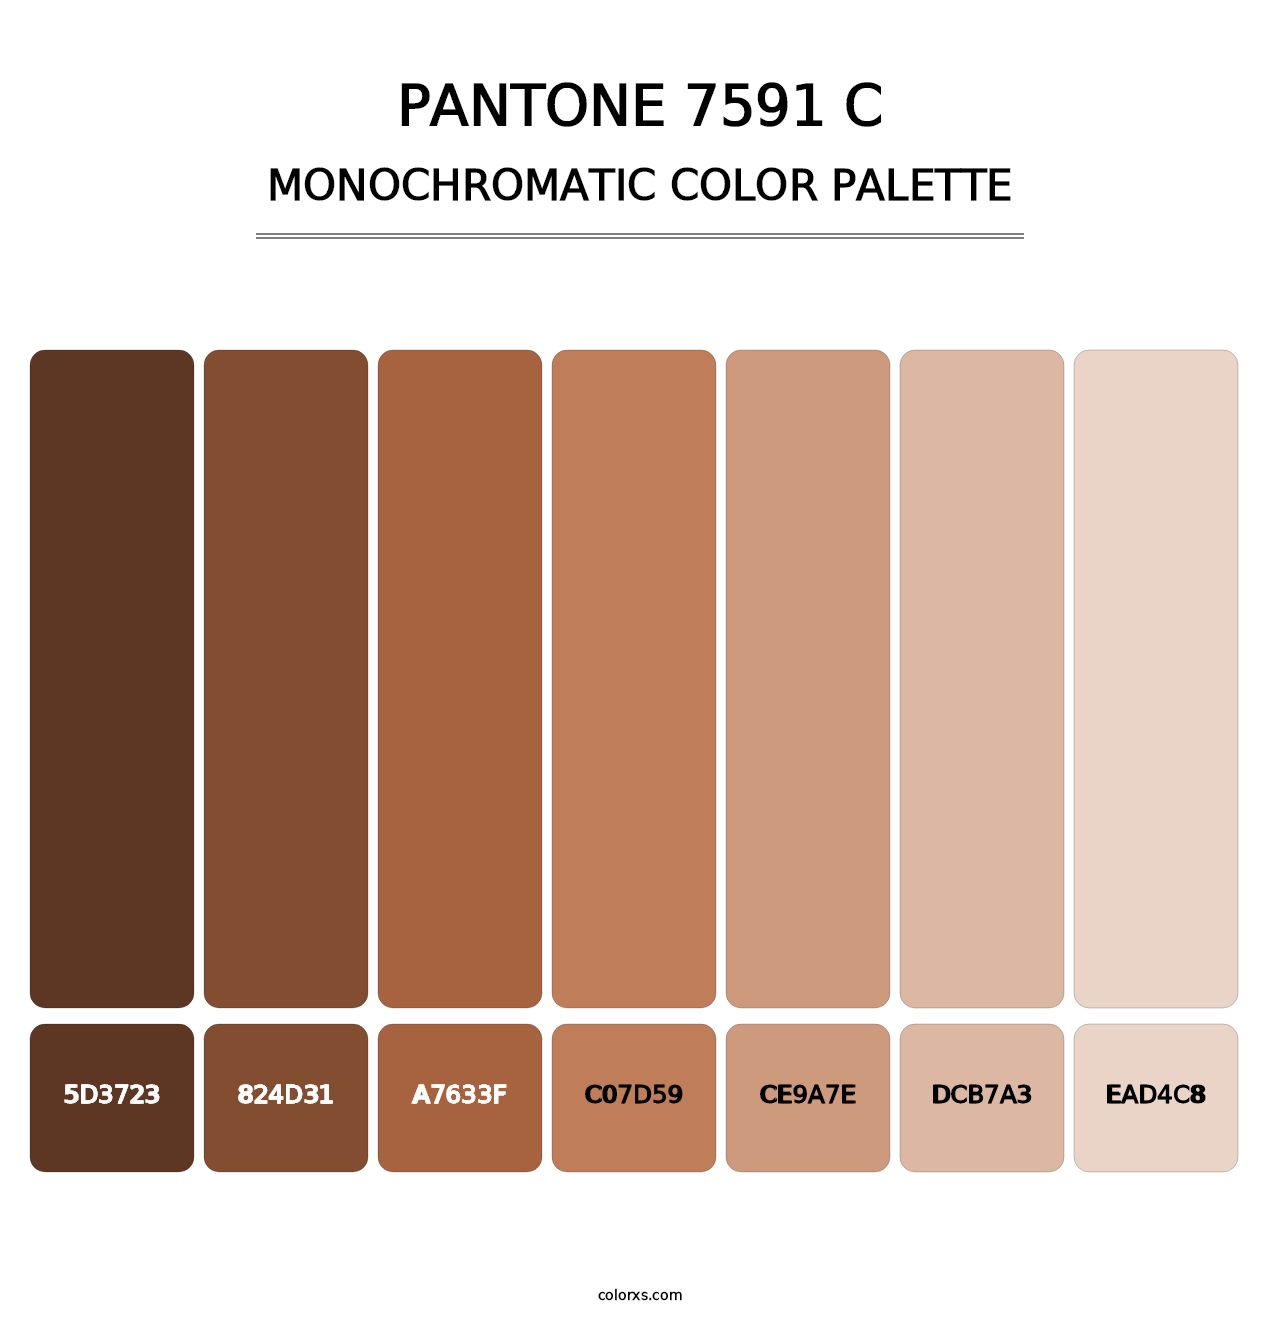 PANTONE 7591 C - Monochromatic Color Palette